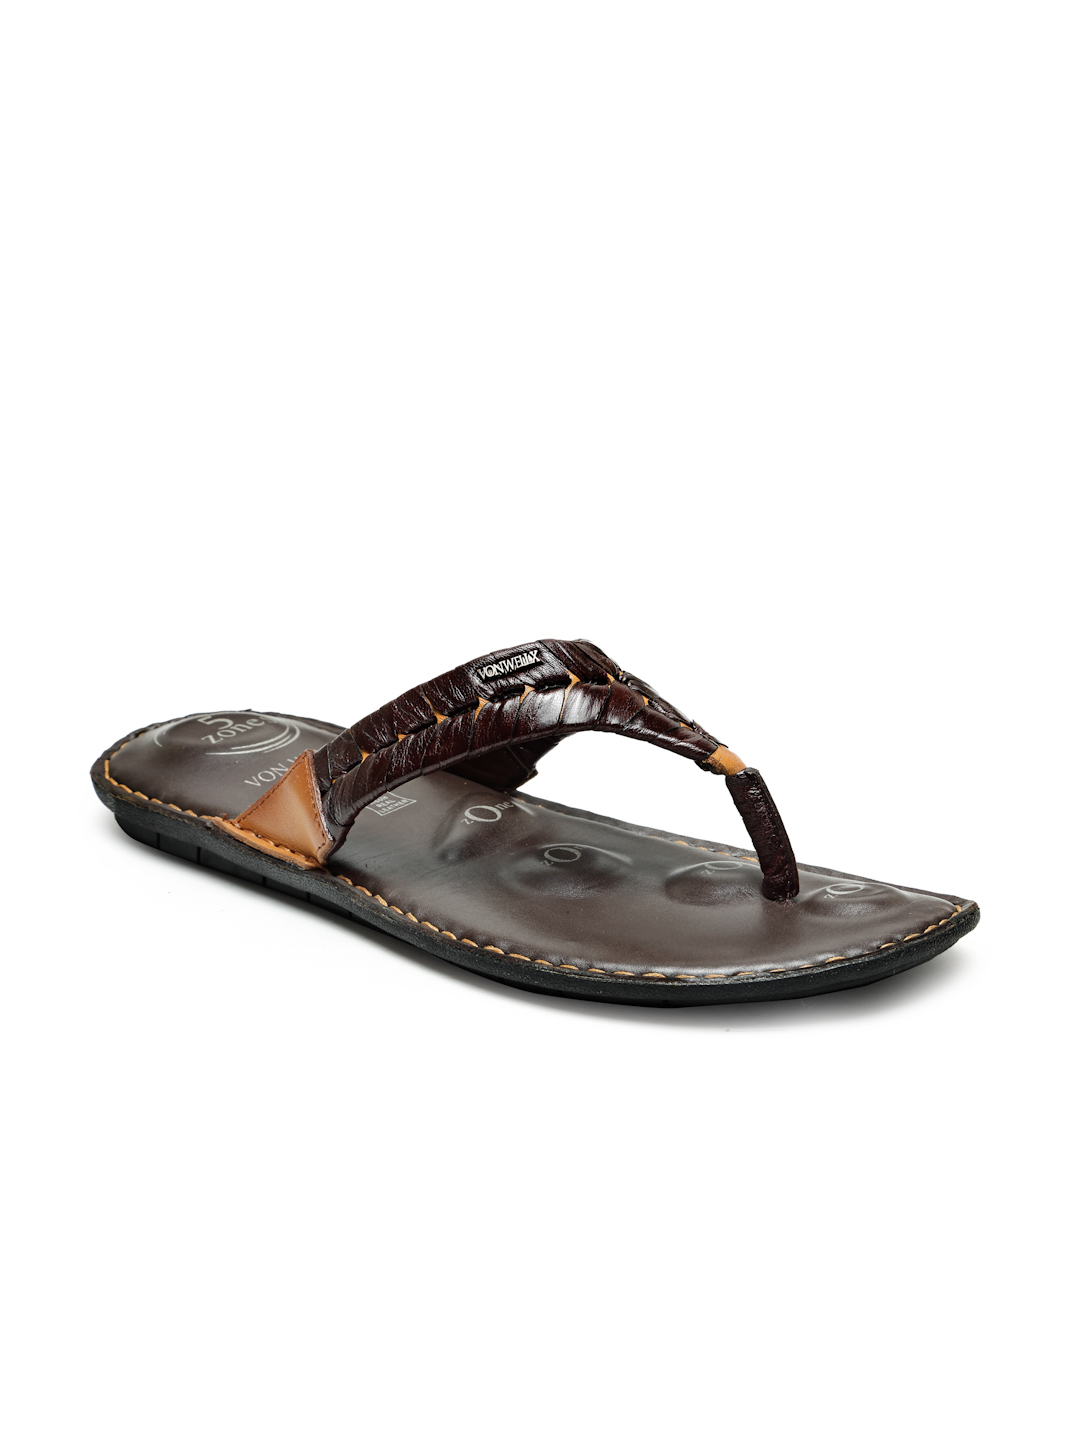 Buy Von Wellx Germany Comfort Men's Tan Slippers Alonso Online in Noida